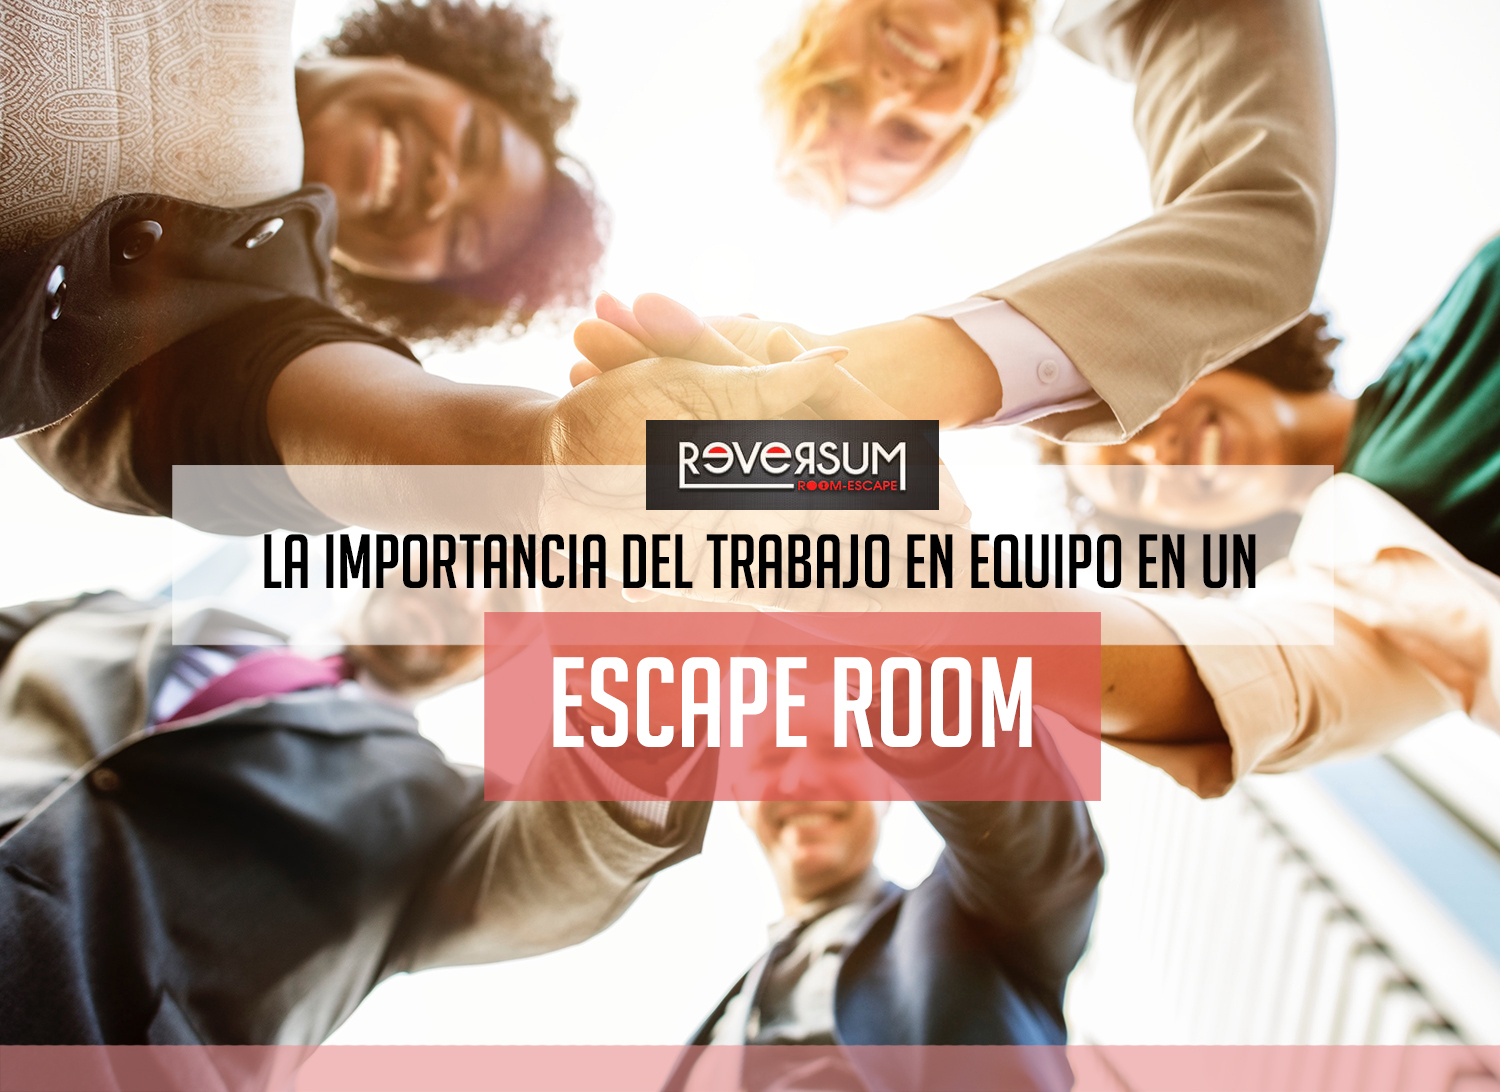 La importancia del trabajo en equipo en un Escape Room